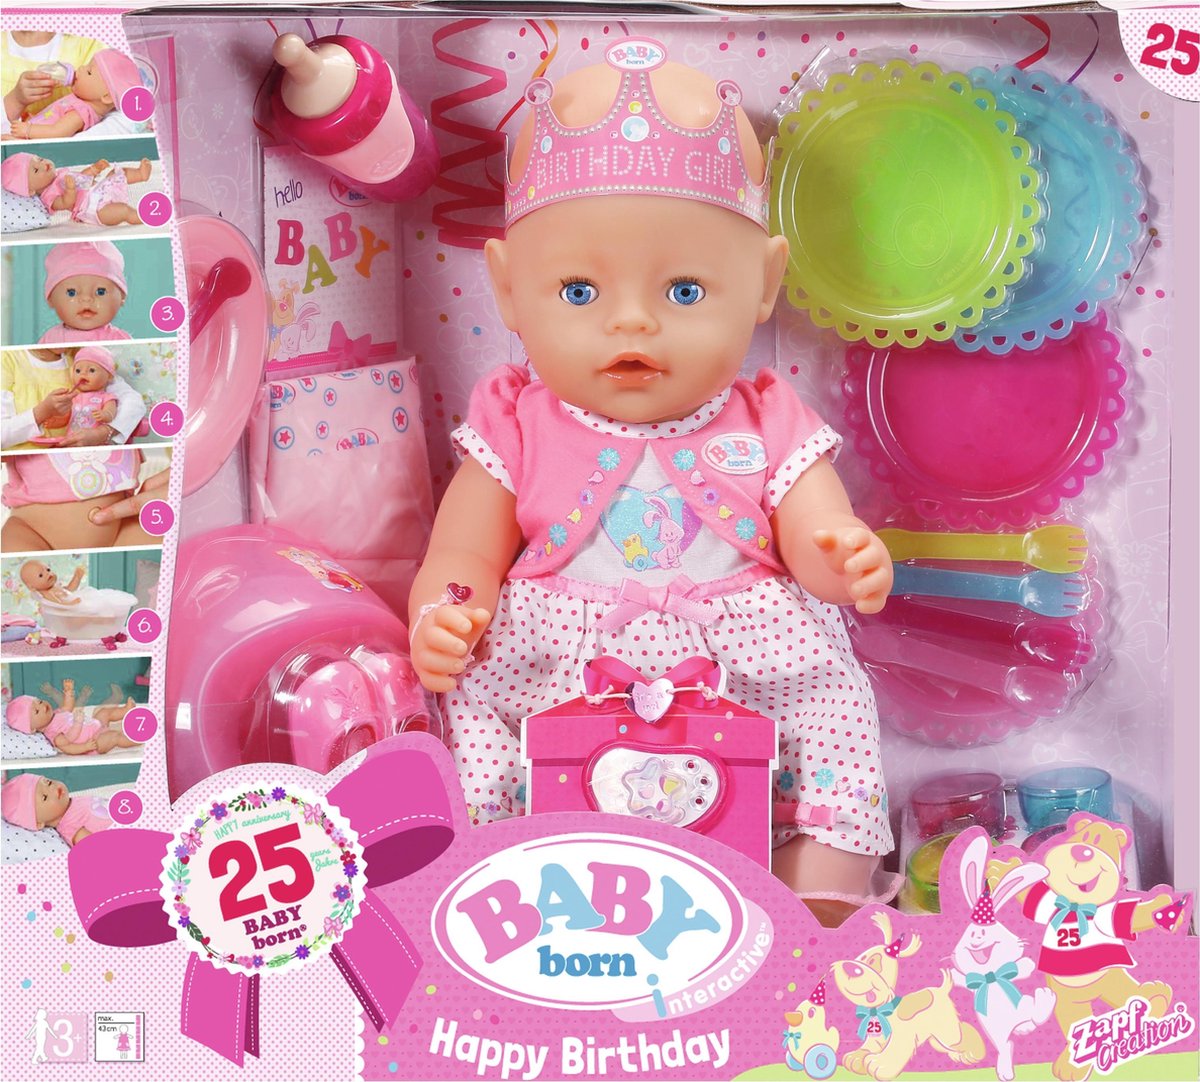 BABY born Interactieve Pop Verjaardag - Babypop bol.com